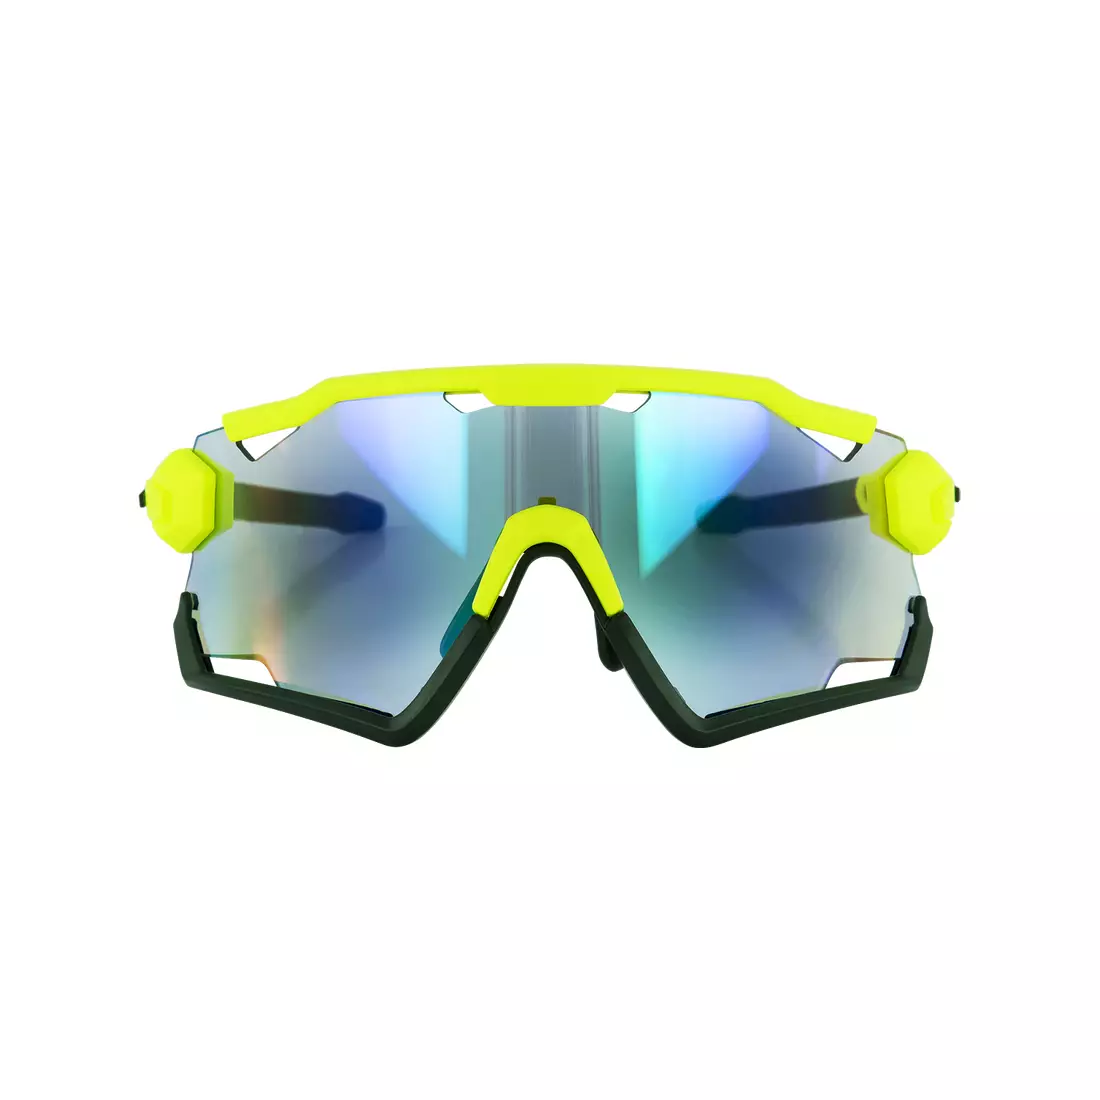 ROGELLI ochelari de protecție pentru sport cu lentile interschimbabile SWITCH  fluor galben